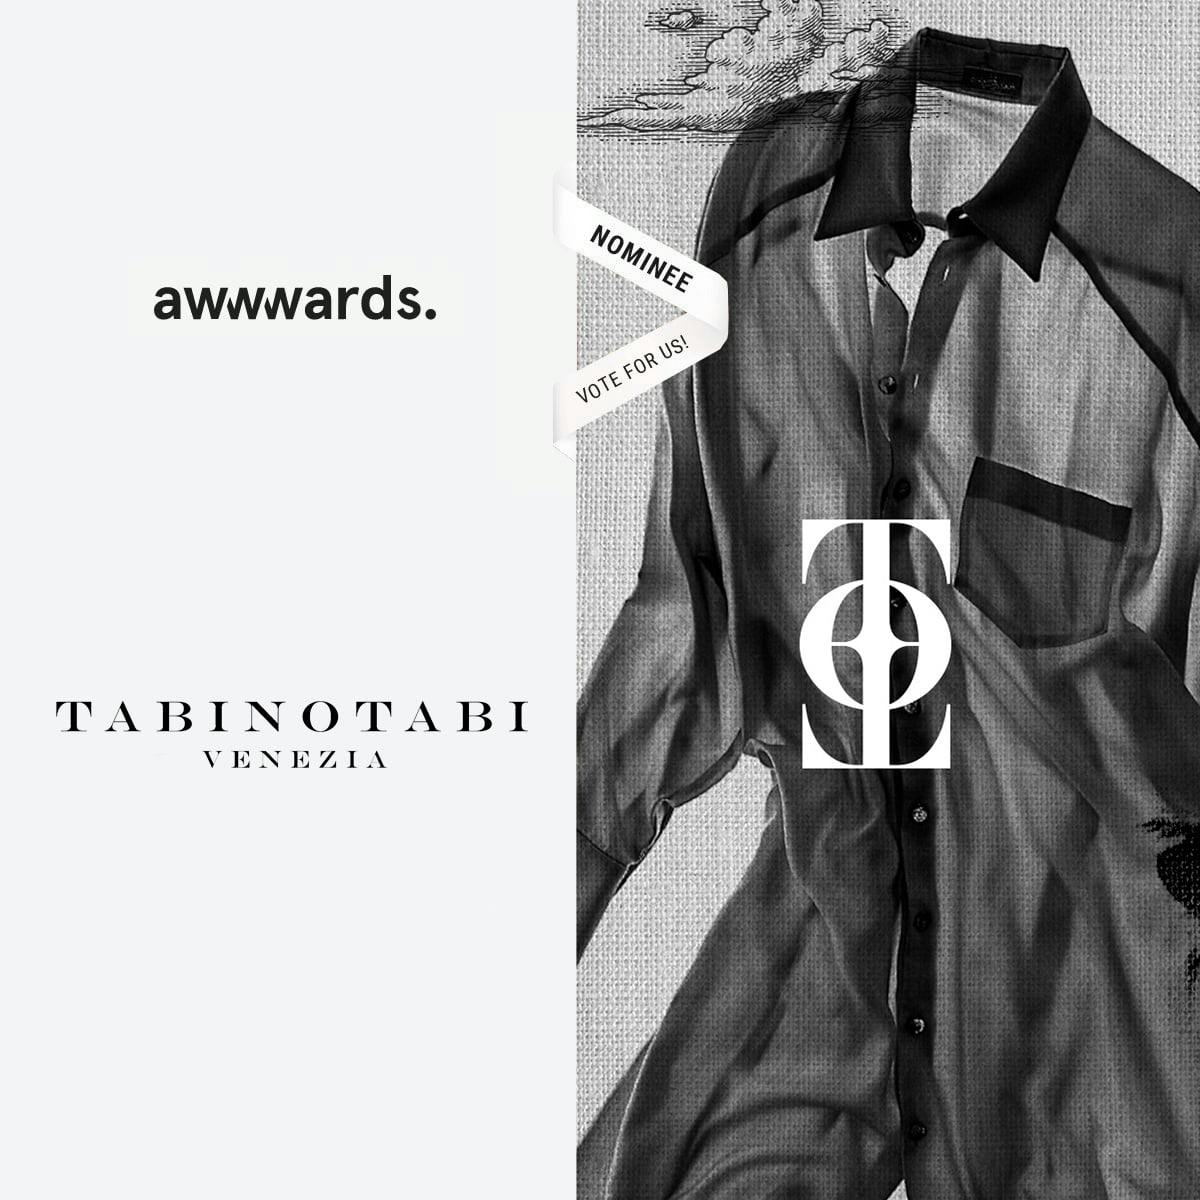 Nomination Awwwards sito Tabinotabi